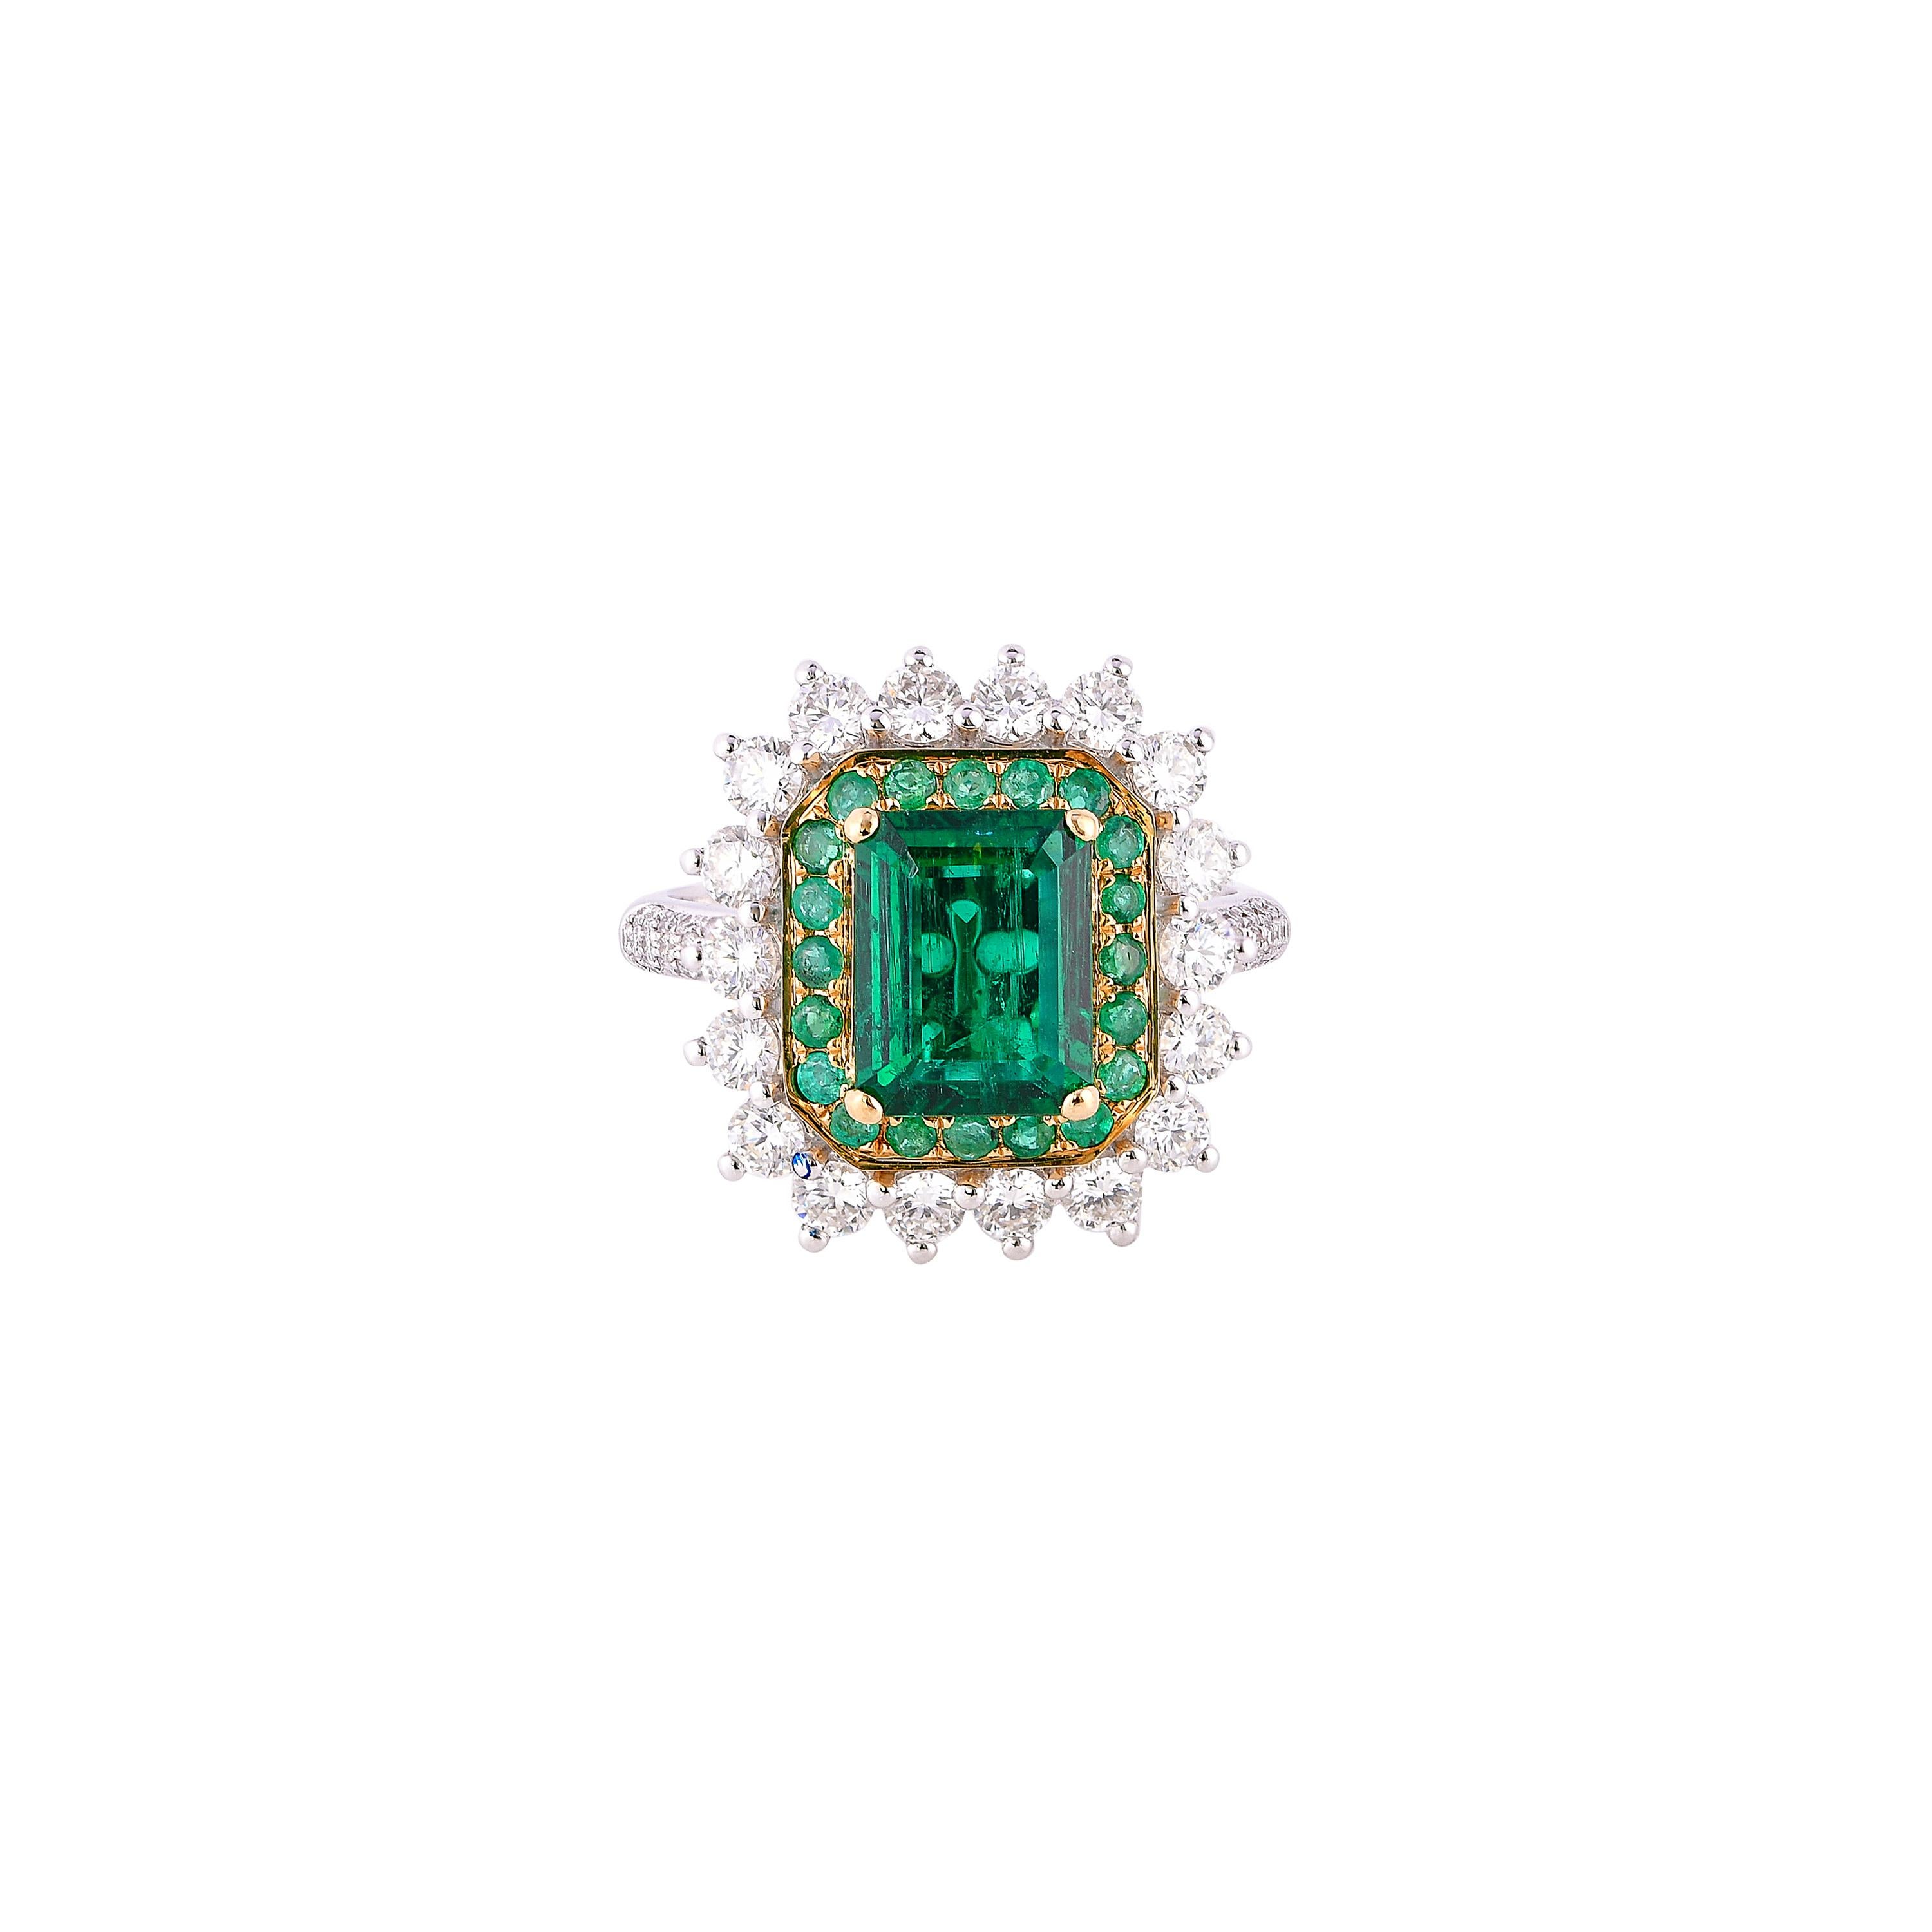 1.9 carat engagement ring